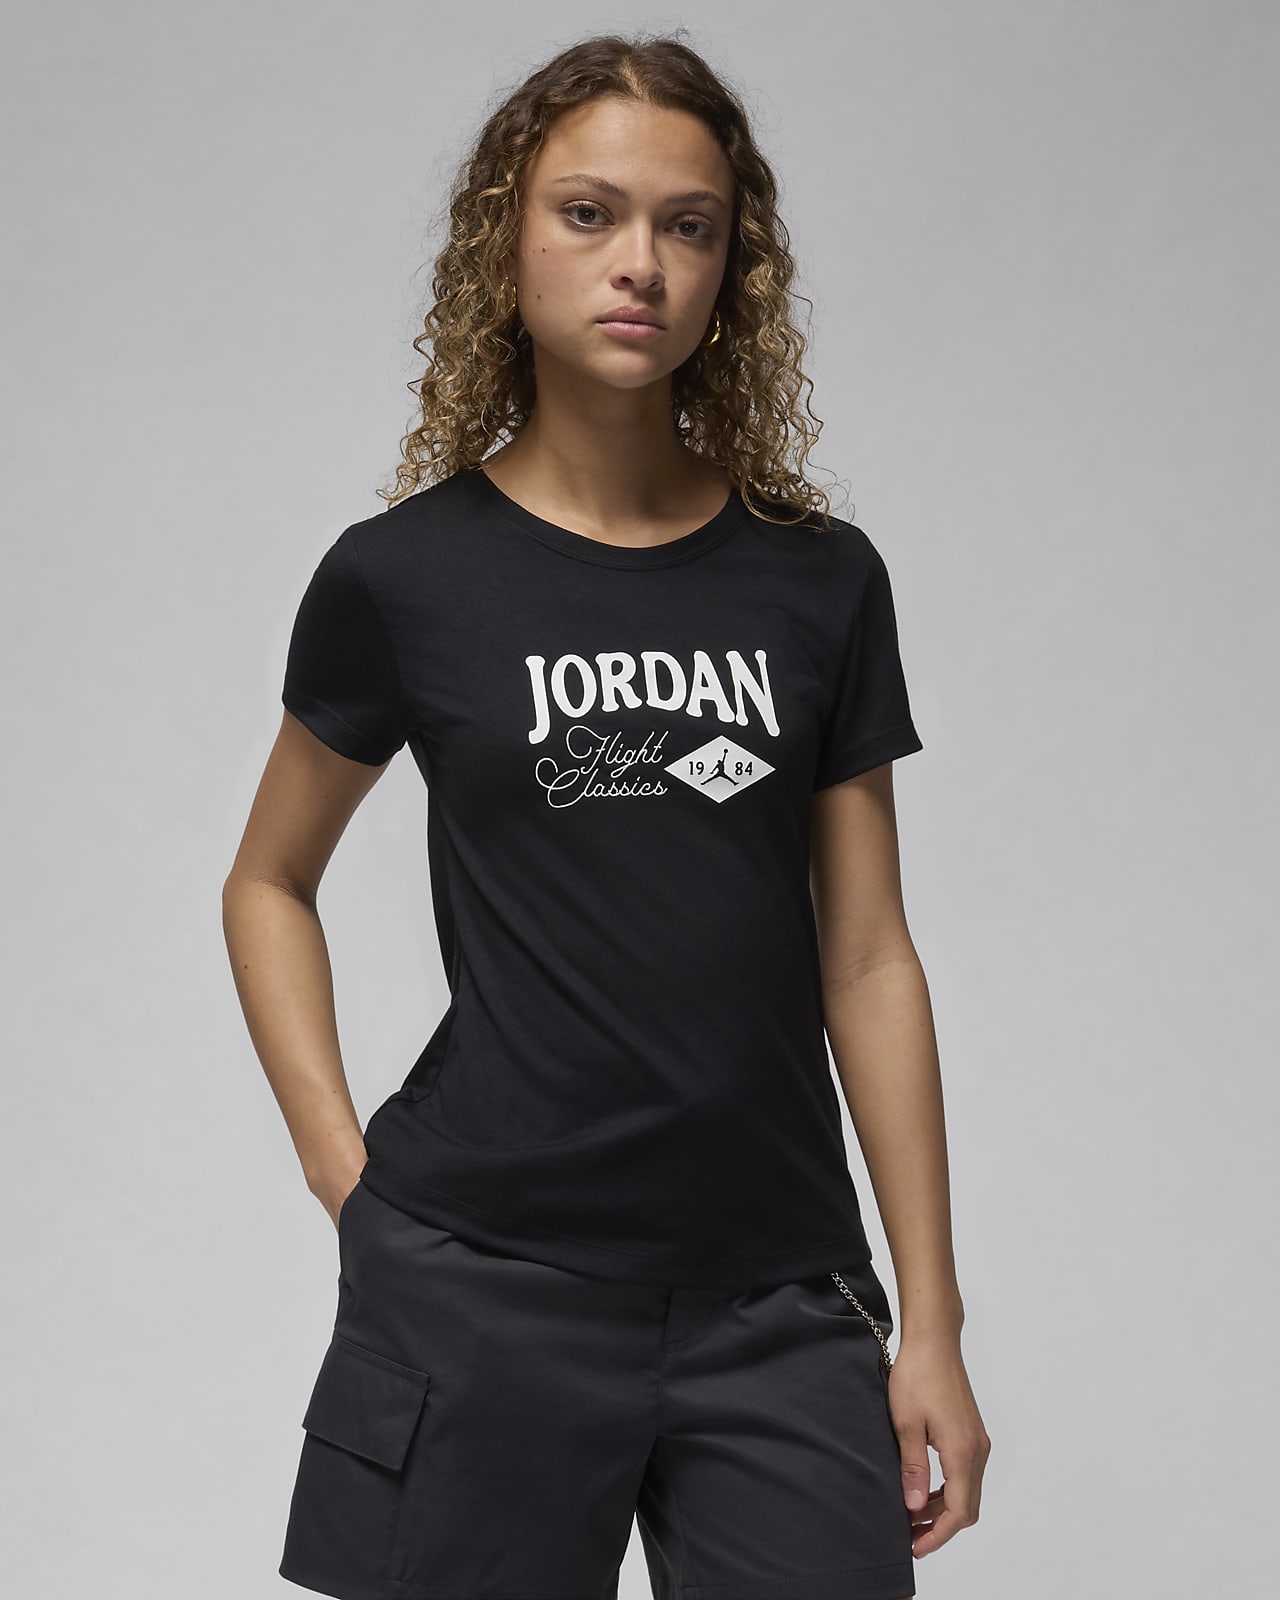 เสื้อยืดทรงเข้ารูปผู้หญิงมีกราฟิก Jordan